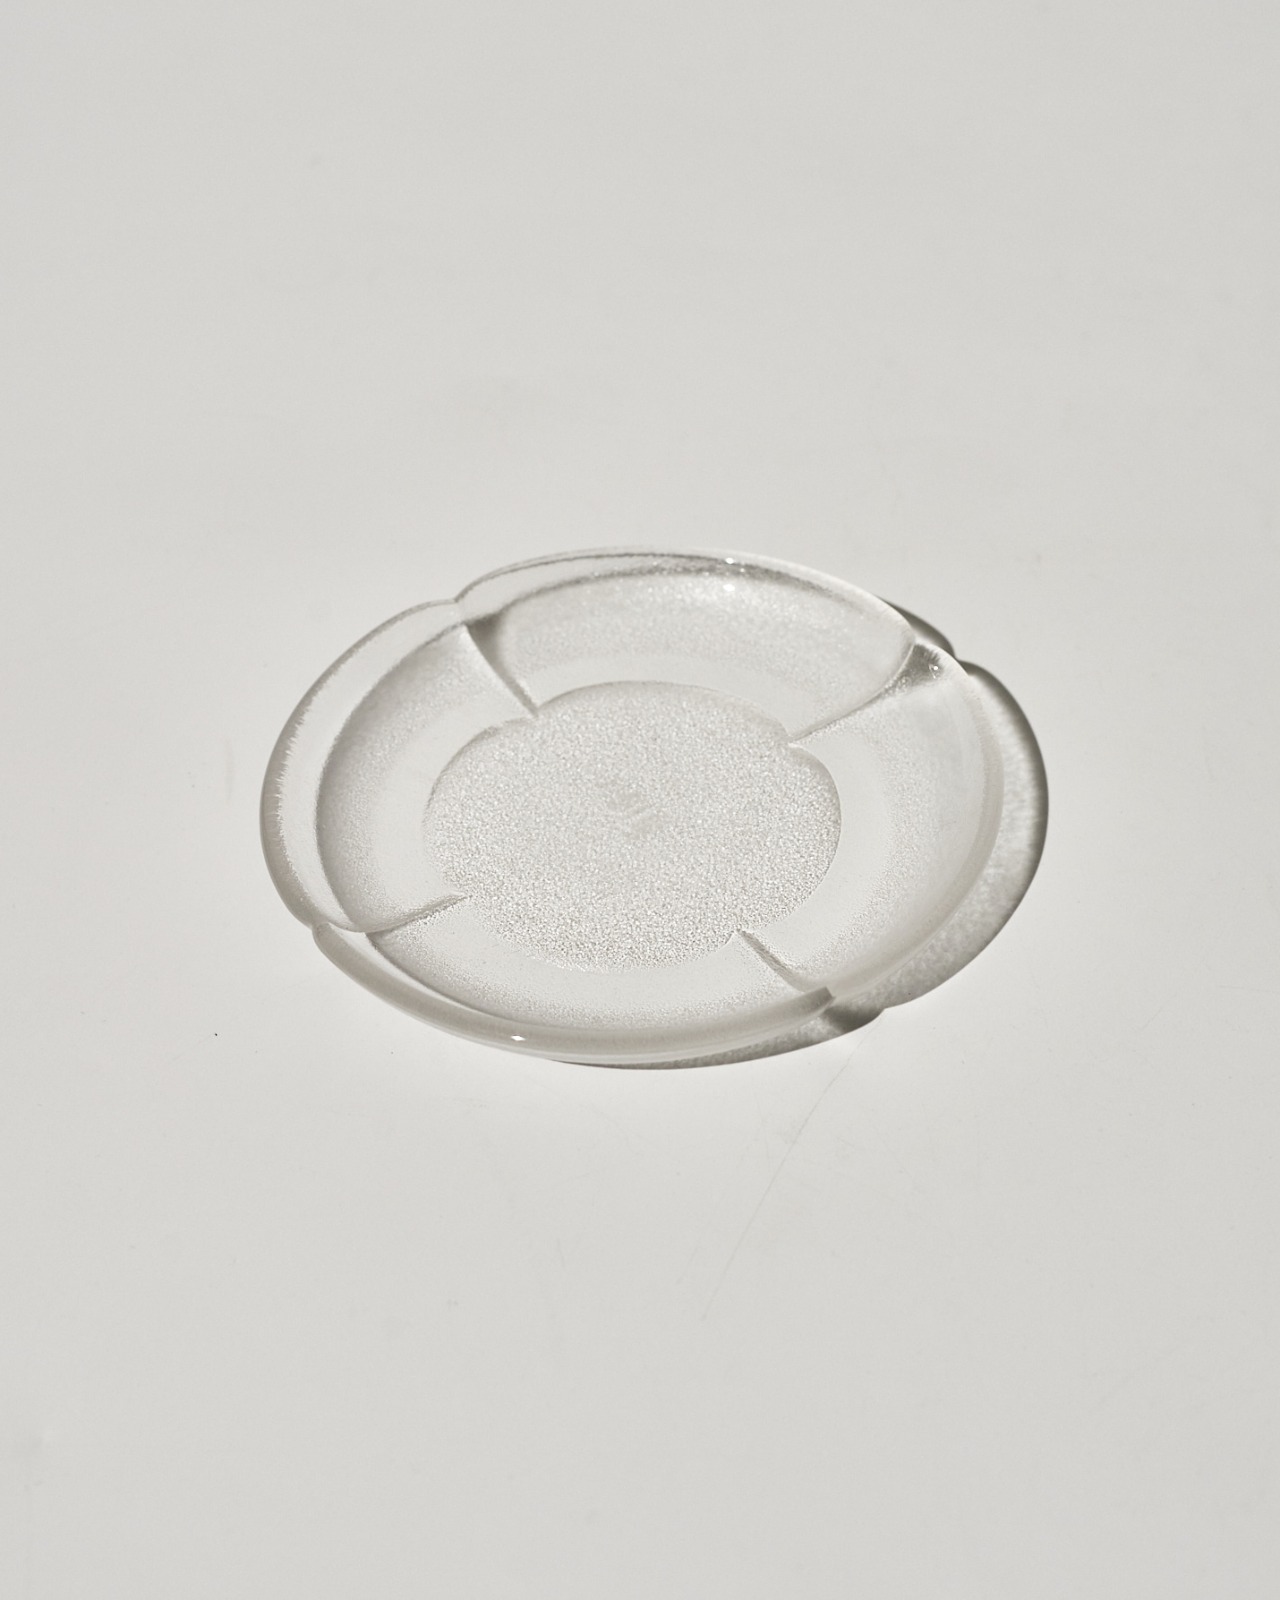 Rosenthal Glass Teller Plate